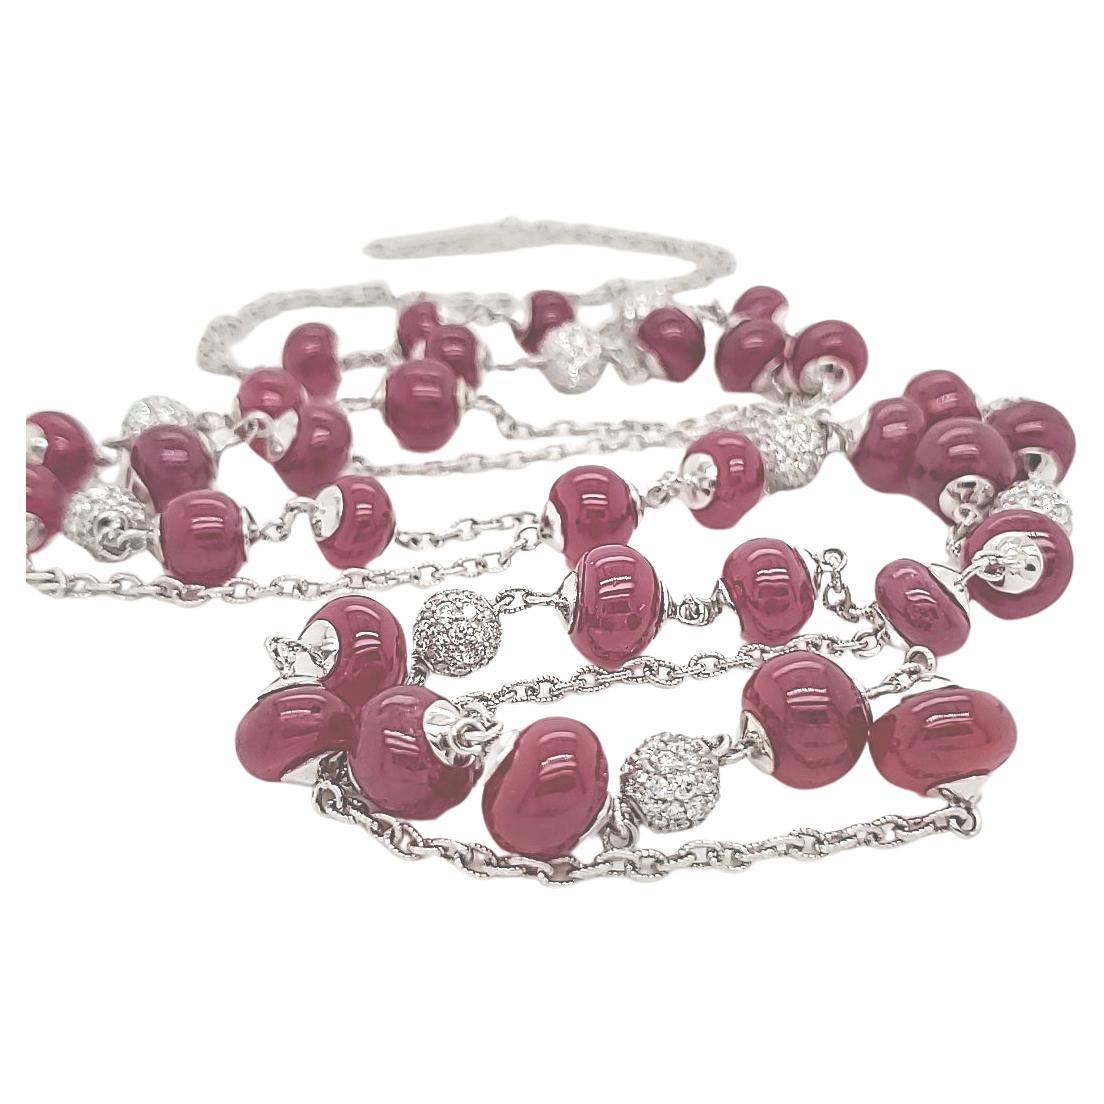 Collier de perles de rubis africain sur chaîne en or 18k

Fabriqué avec une précision méticuleuse, ce collier de 98 mm est une vision de luxe raffiné. 

Les 3,31 carats de diamants éblouissants qui ornent sa longueur témoignent des normes les plus